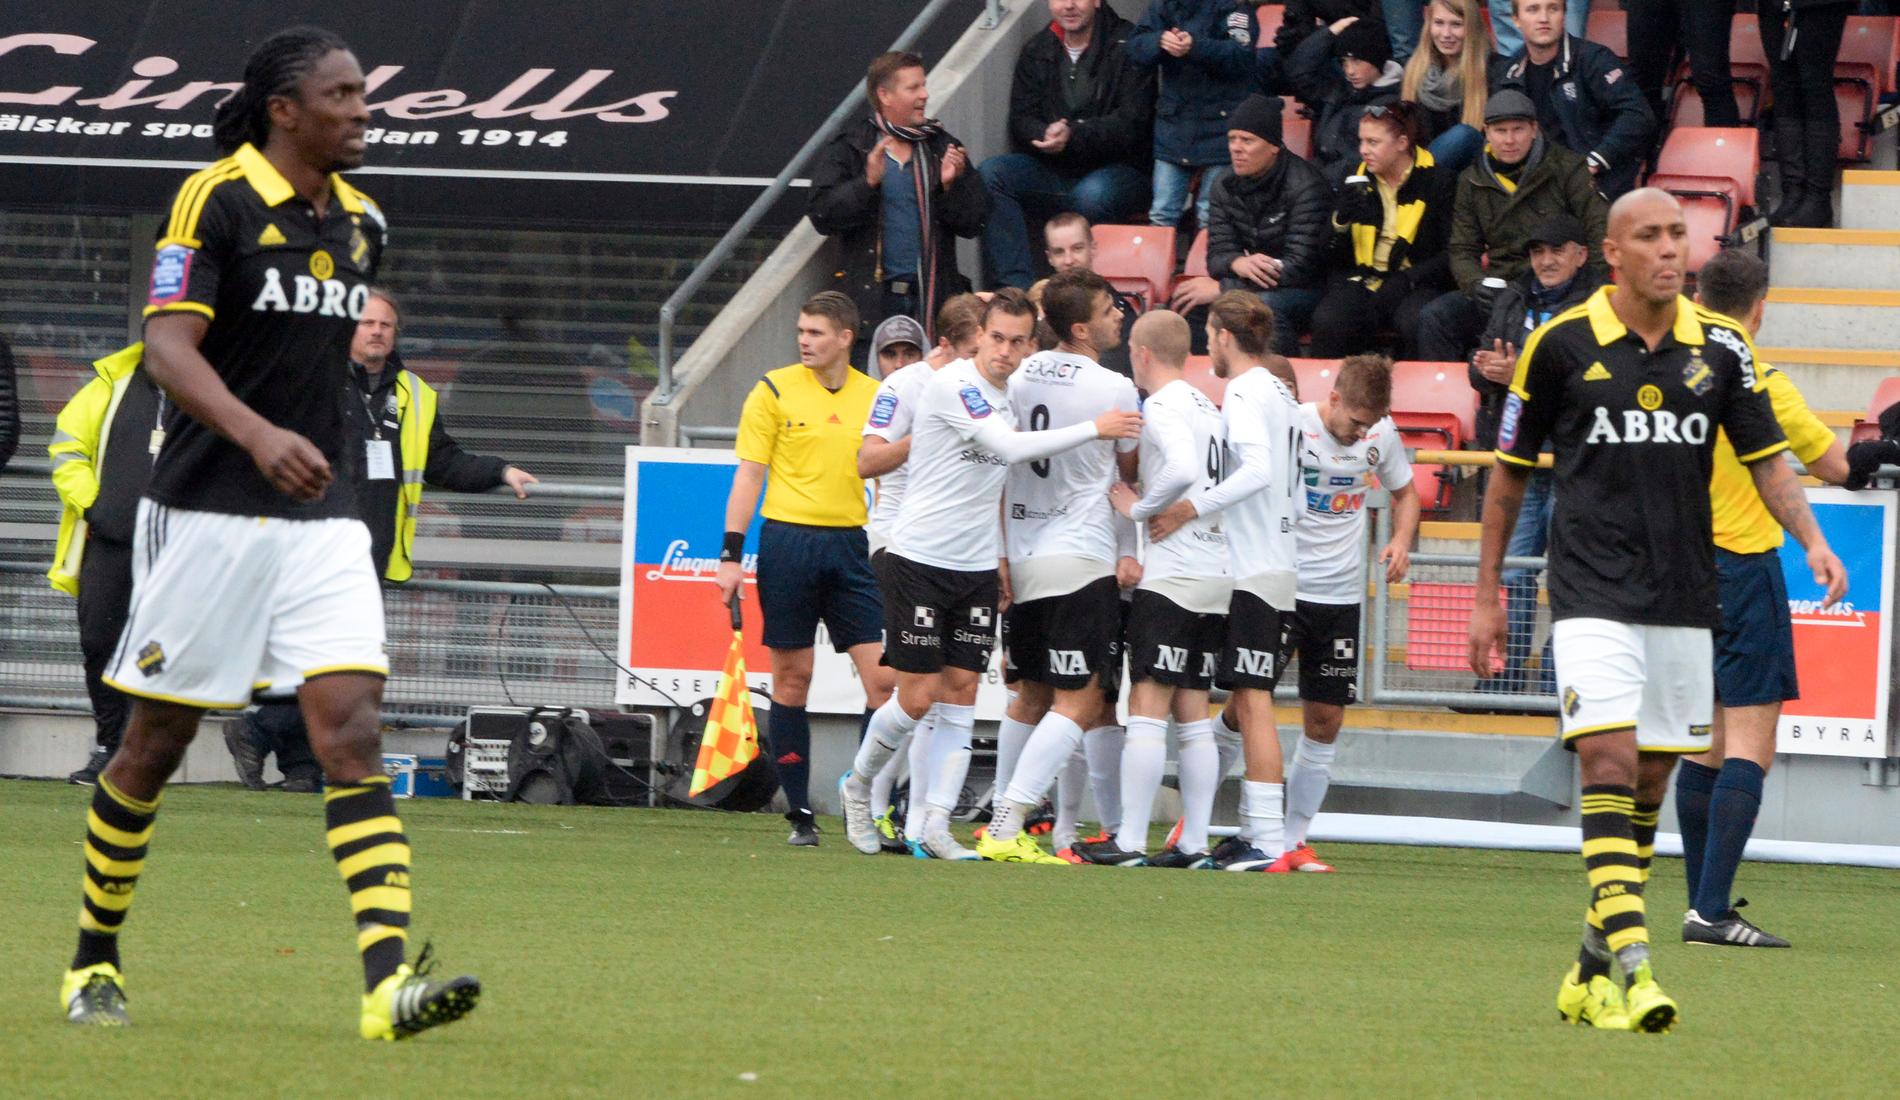 Martin Broberg blir omklappad efter ledningsmålet mot AIK.